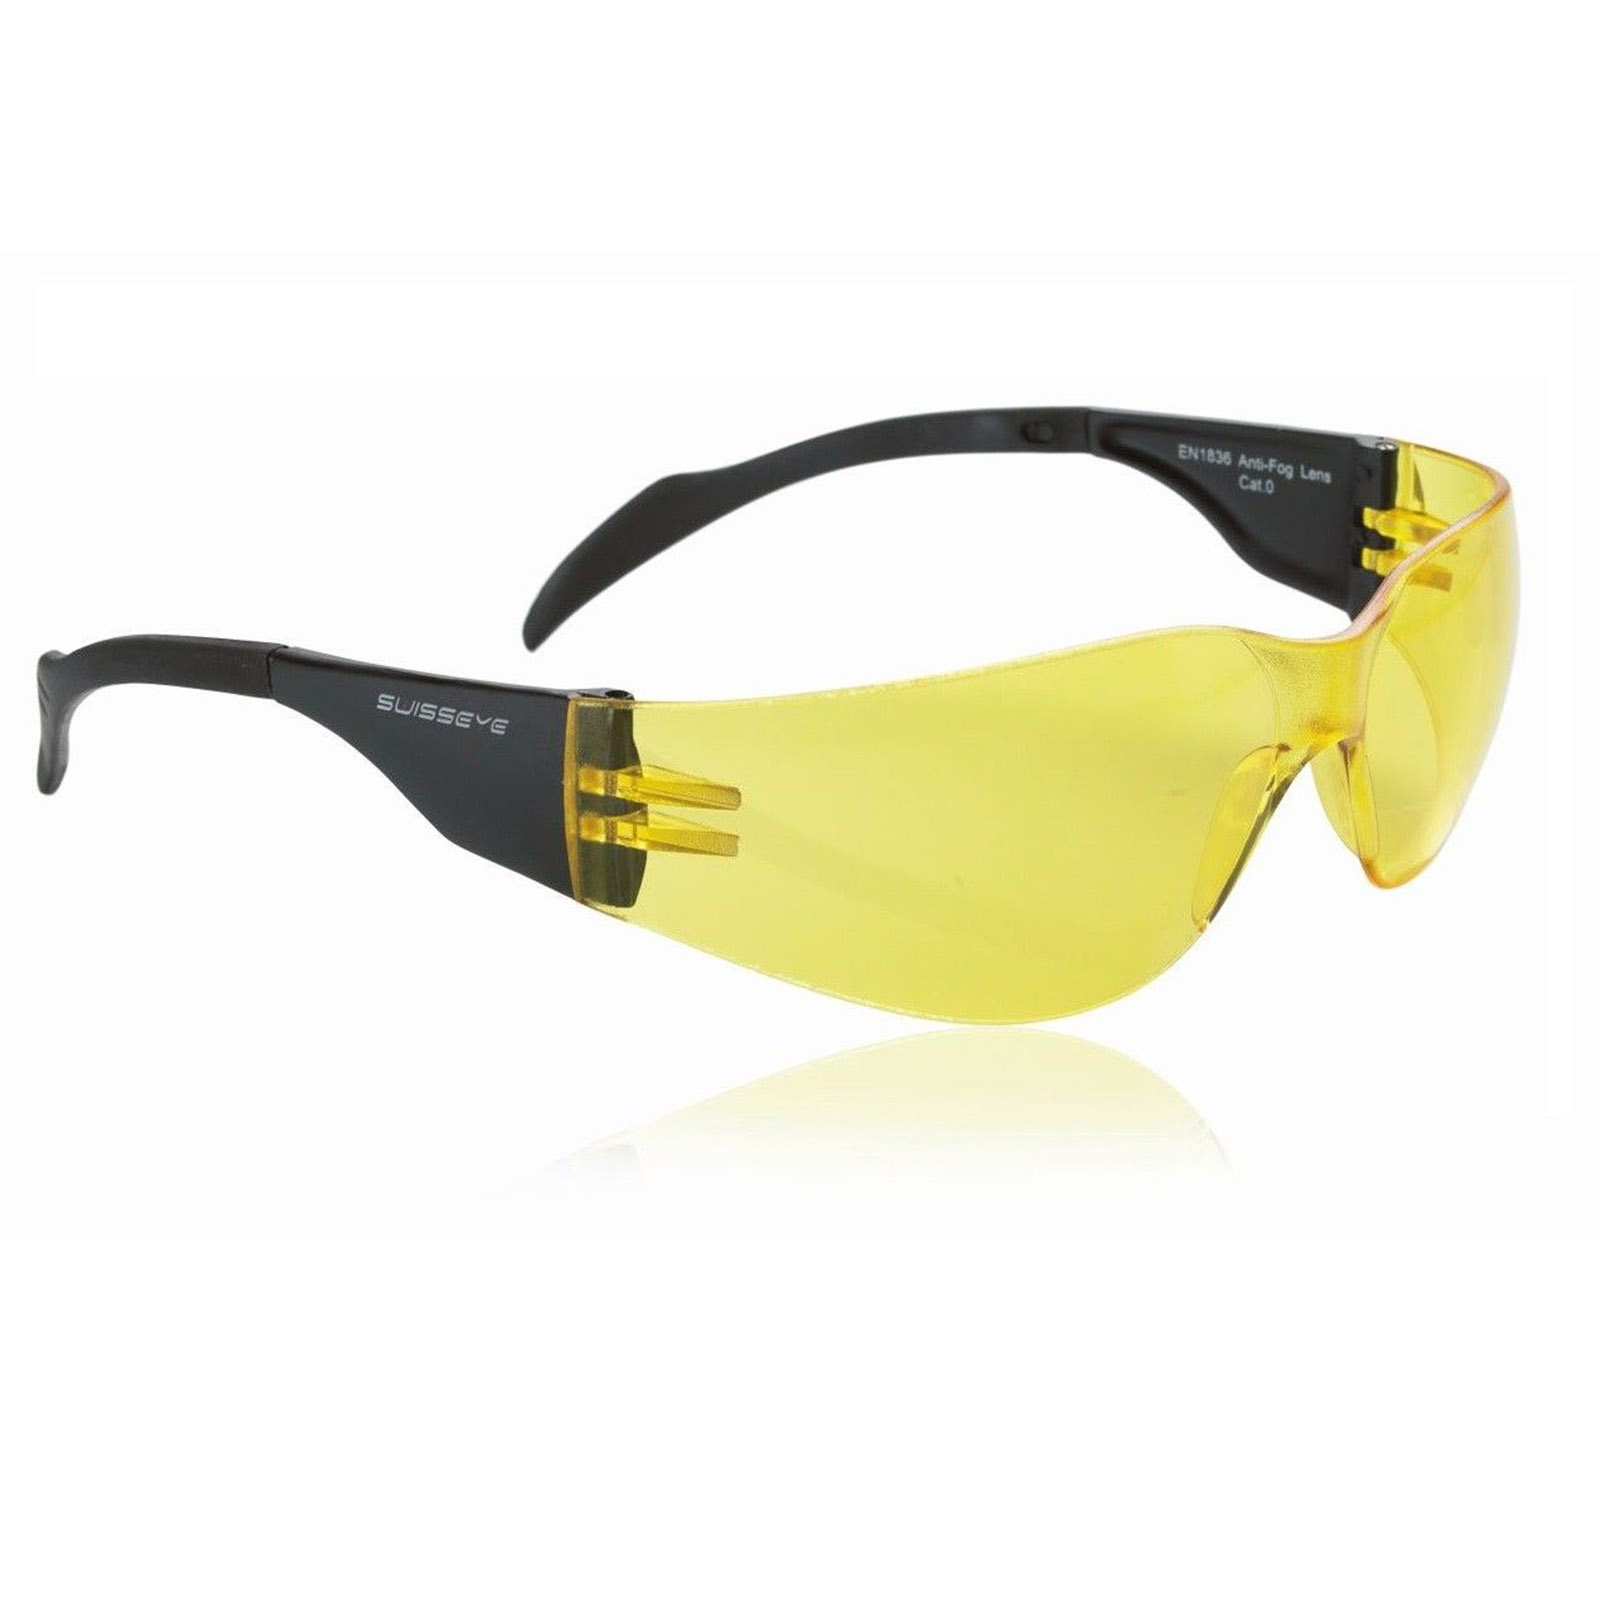 Swisseye Sonnenbrille Outbreak Rahmen schwarz / Polycarbonatscheiben gelb